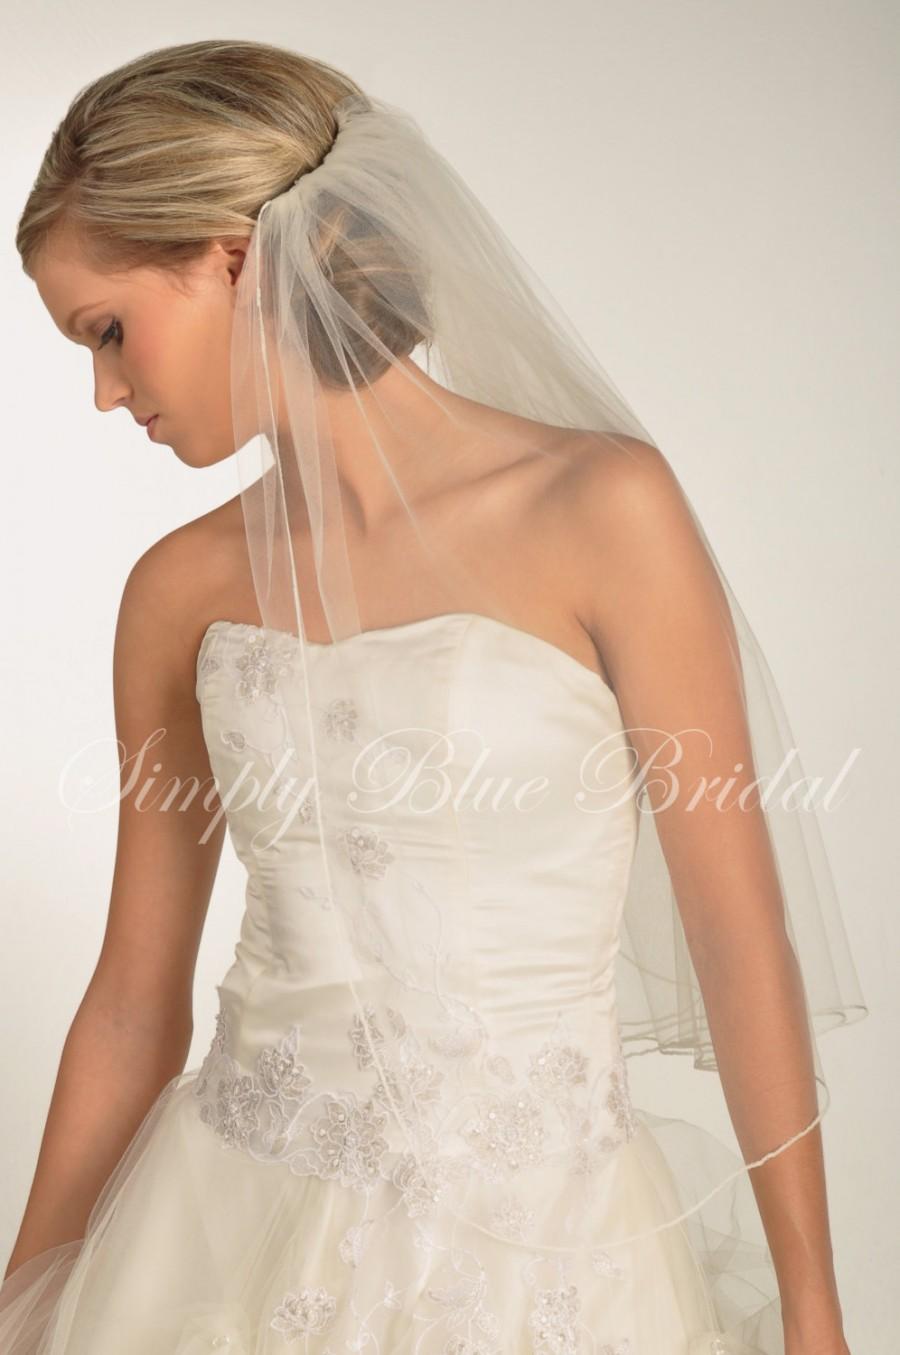 زفاف - Veil for Brides, Short Veil - Simply Pencil Edge Veil - Elbow or Fingertip Length